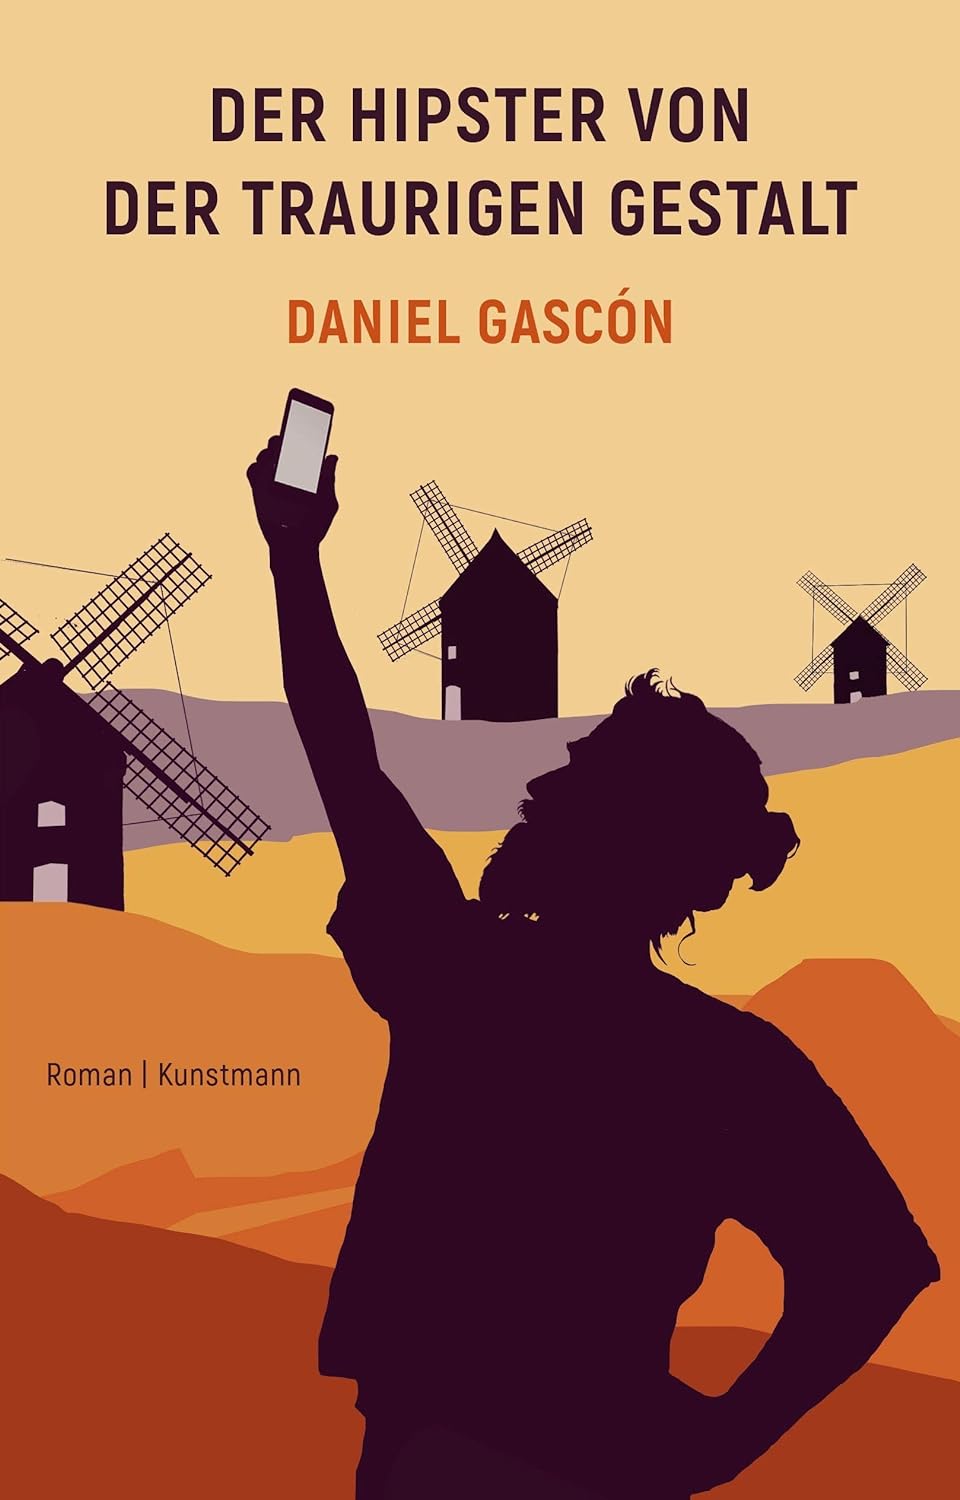 #
„Welcher Hipster von jener traurigen Gestalt“ von Daniel Gascón